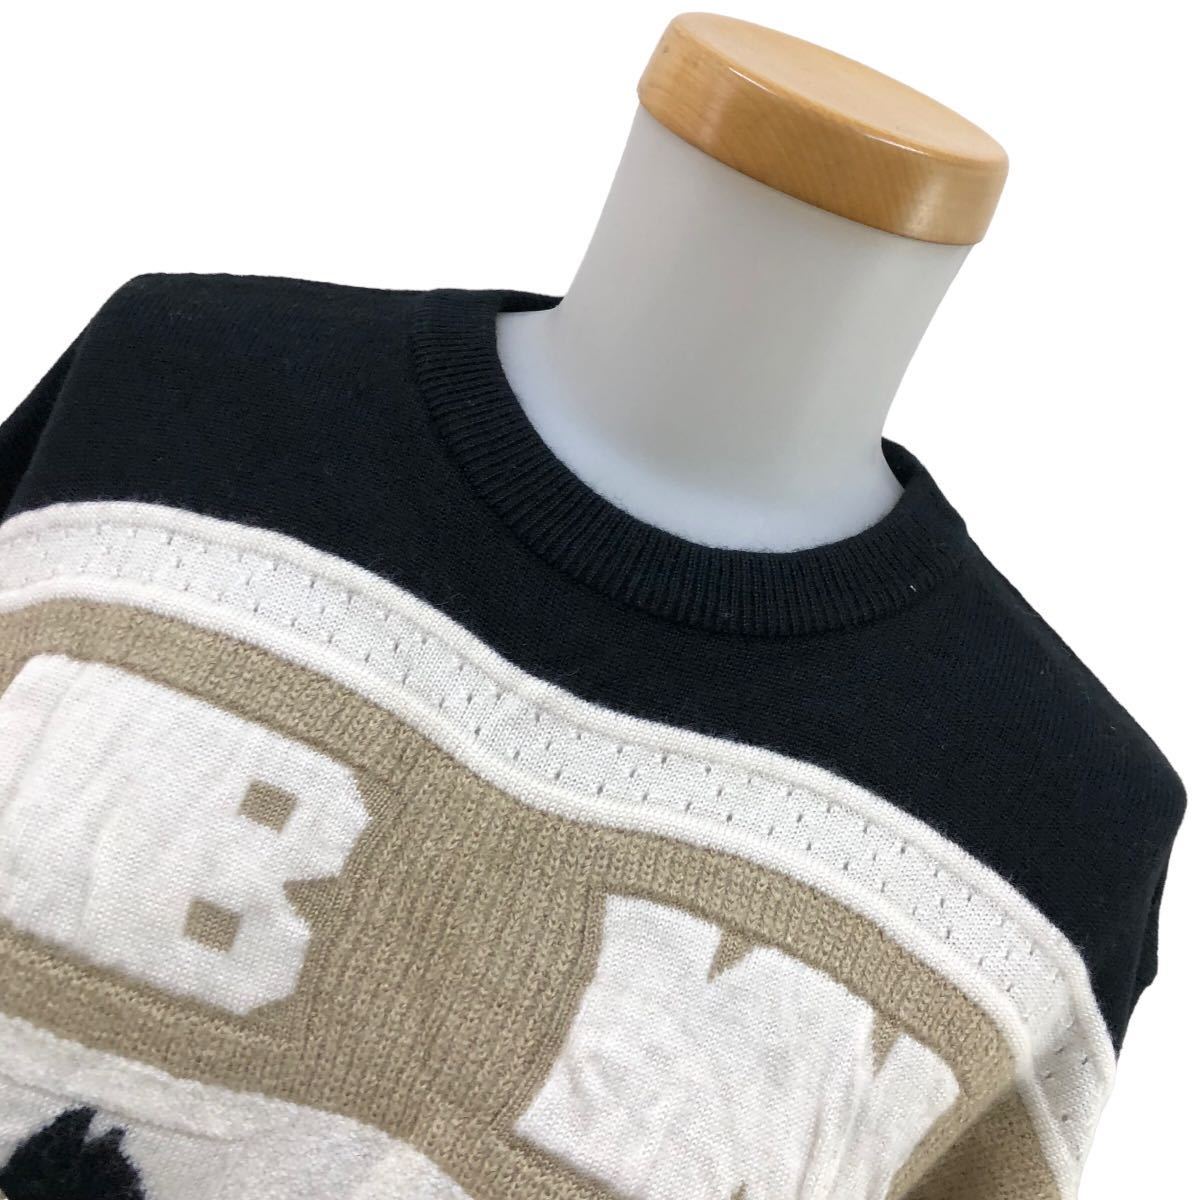 S188 сделано в Японии BLACK&WHITE черный & белый GOLF Golf Golf одежда вязаный свитер свитер tops вязаный женский M чёрный белый 